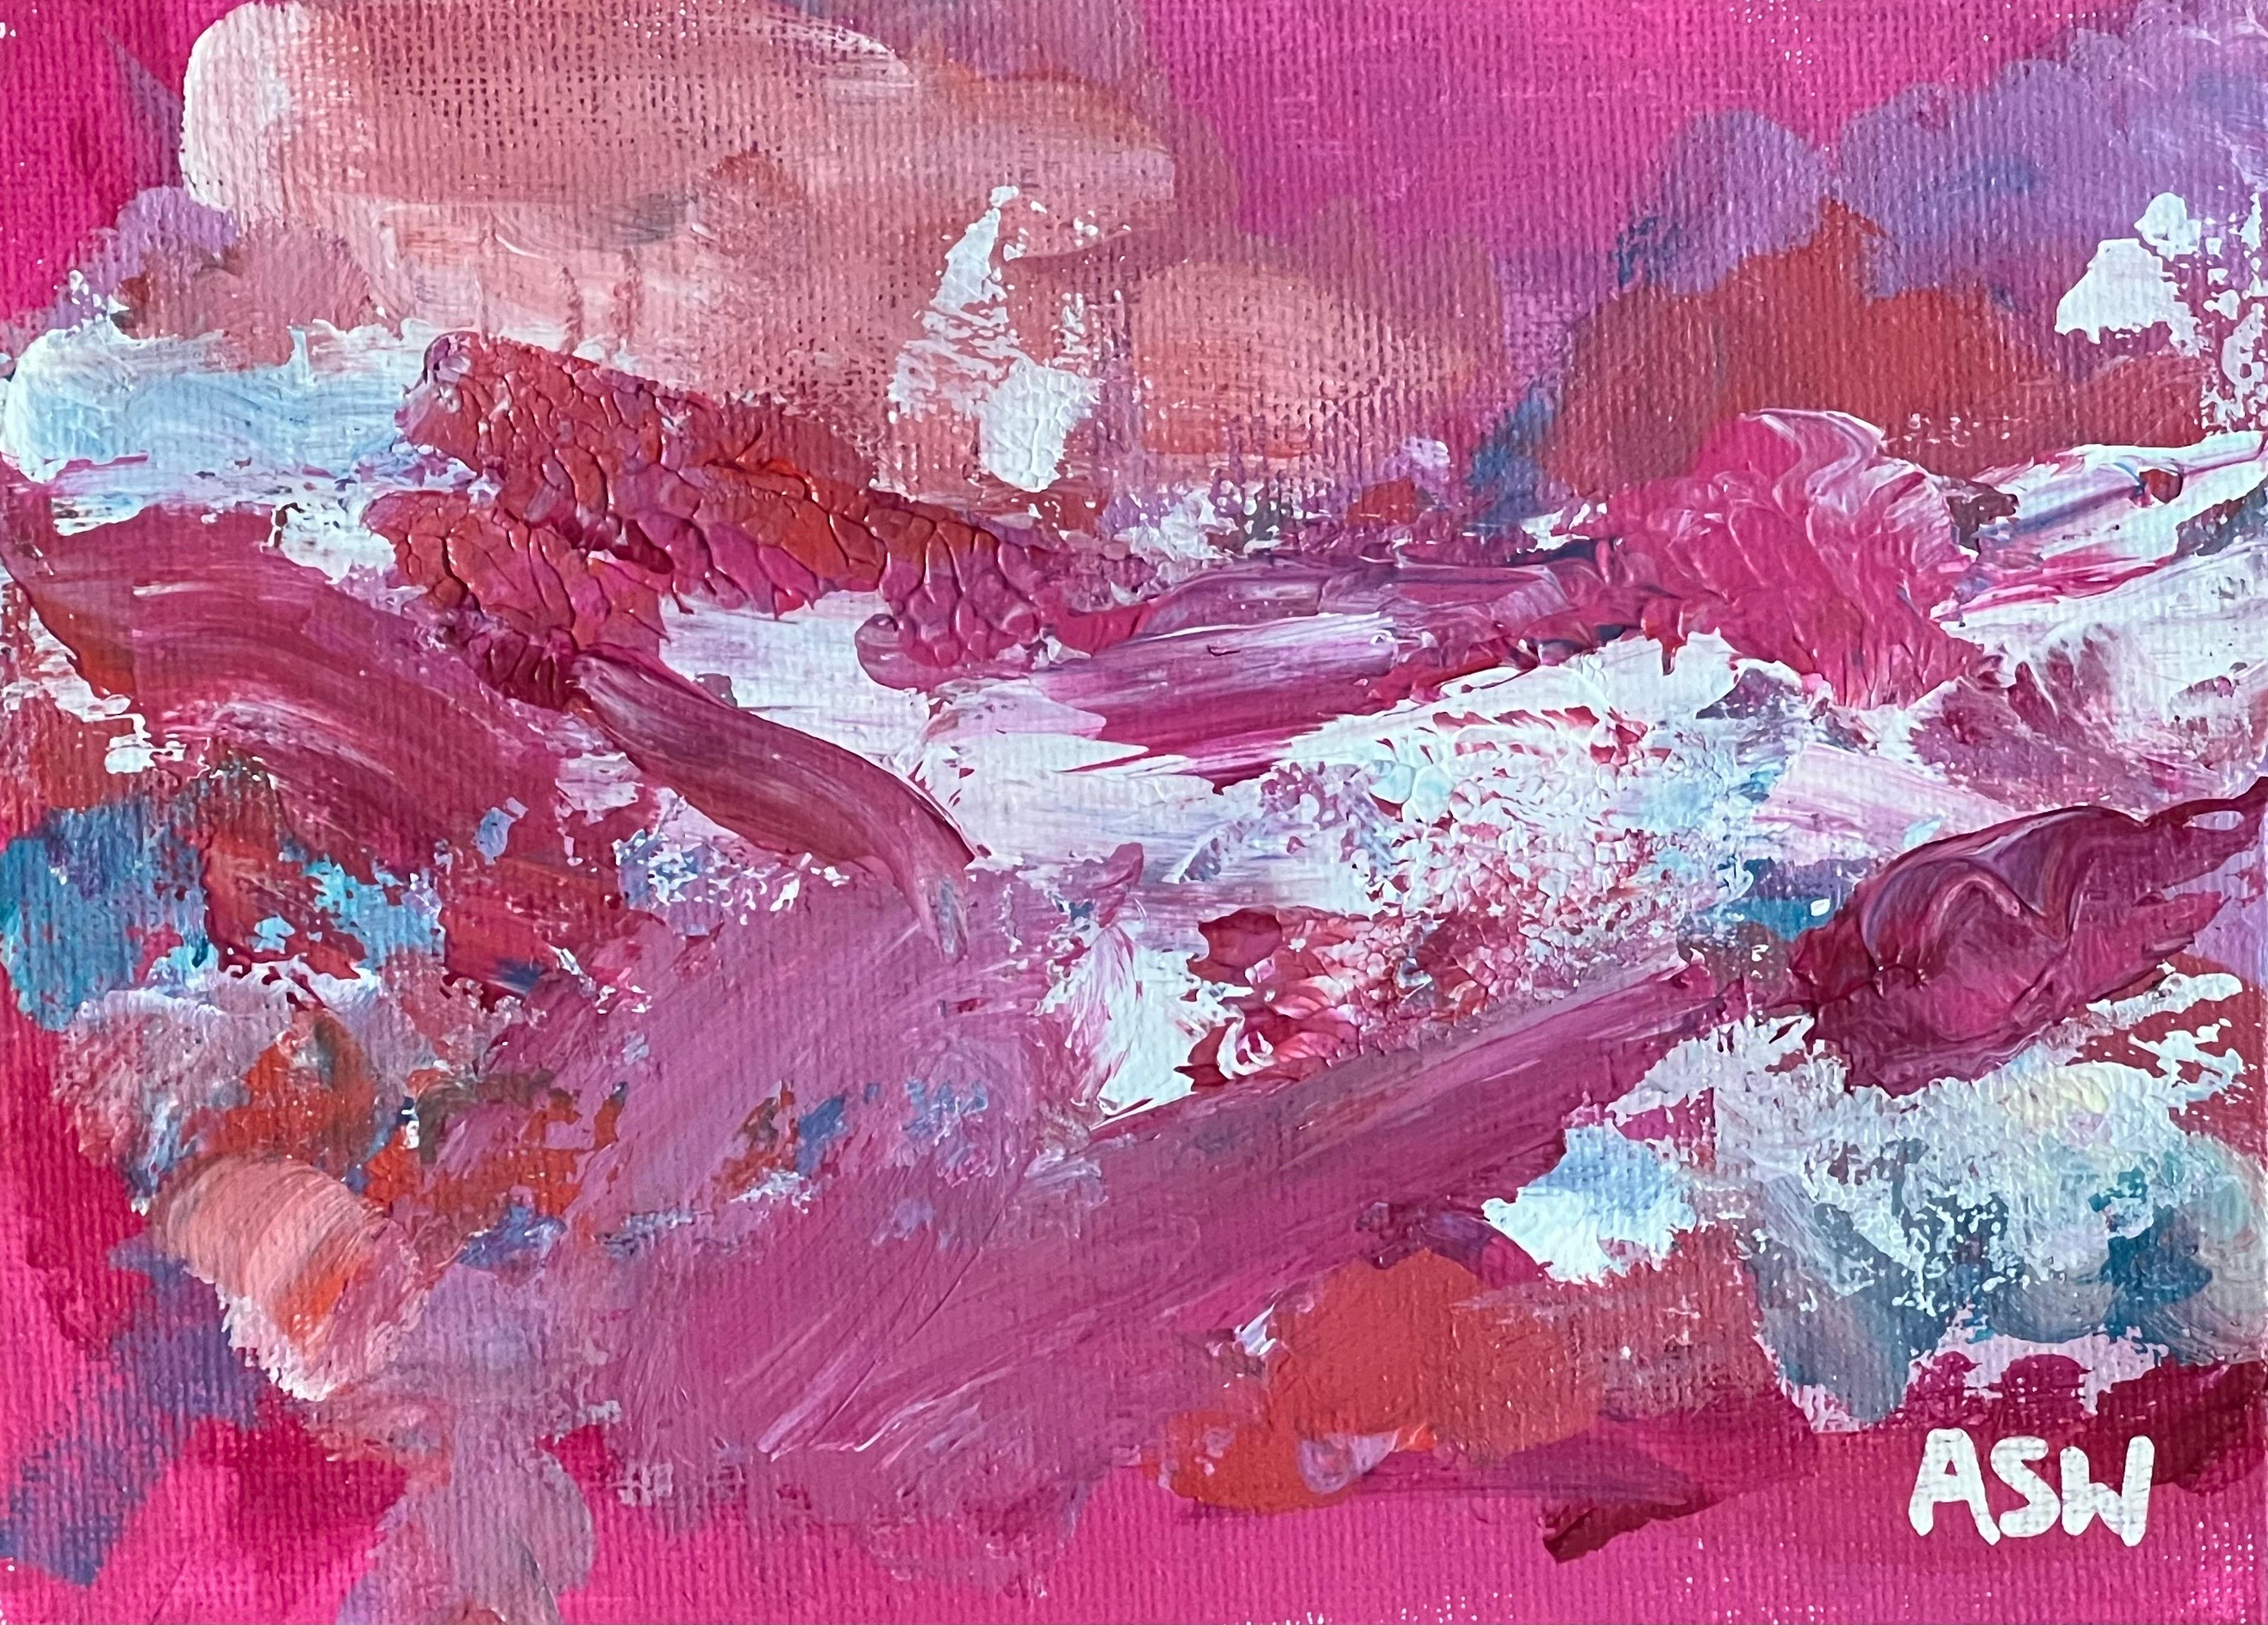 Abstraktes Miniaturgemälde auf rosafarbenem Hintergrund von der zeitgenössischen britischen Künstlerin Angela Wakefield

Kunst misst 7 x 5 Zoll
Rahmen misst 12 x 10 Zoll 

Angela Wakefield war zweimal auf dem Titelblatt von 